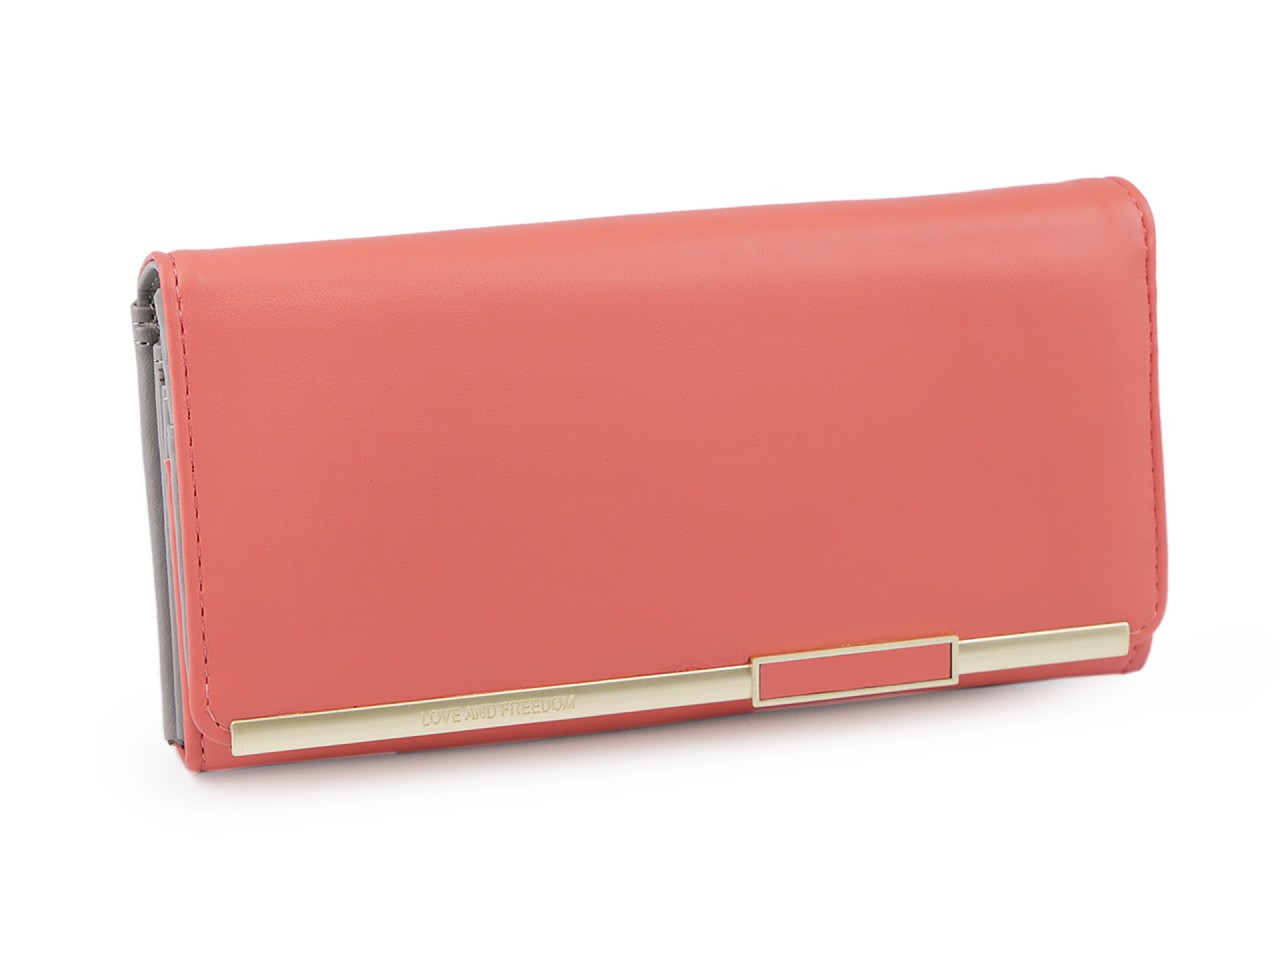 Dámská peněženka 9x18 cm, barva 1 korálová světlá